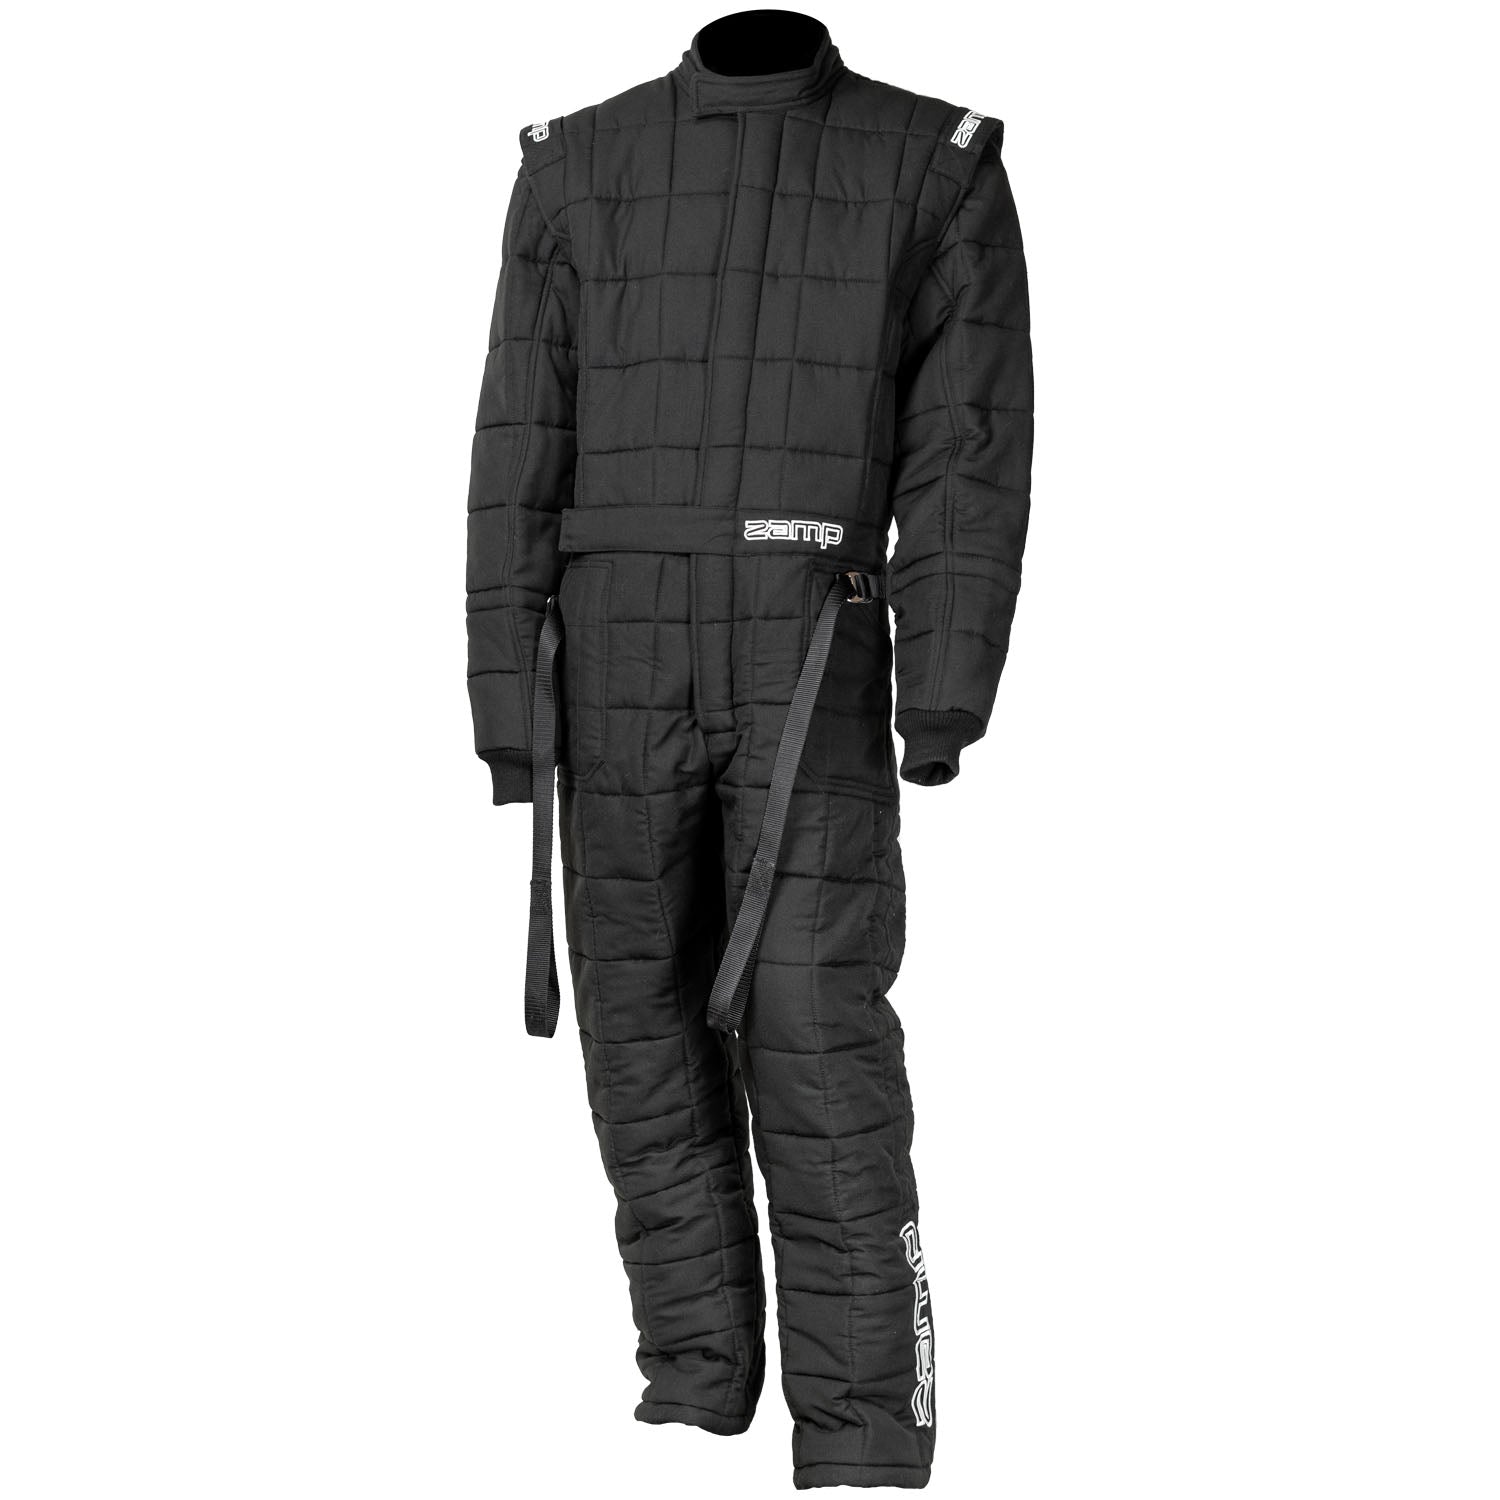 ZAMP Racing ZR-Drag Suit Black R090003L